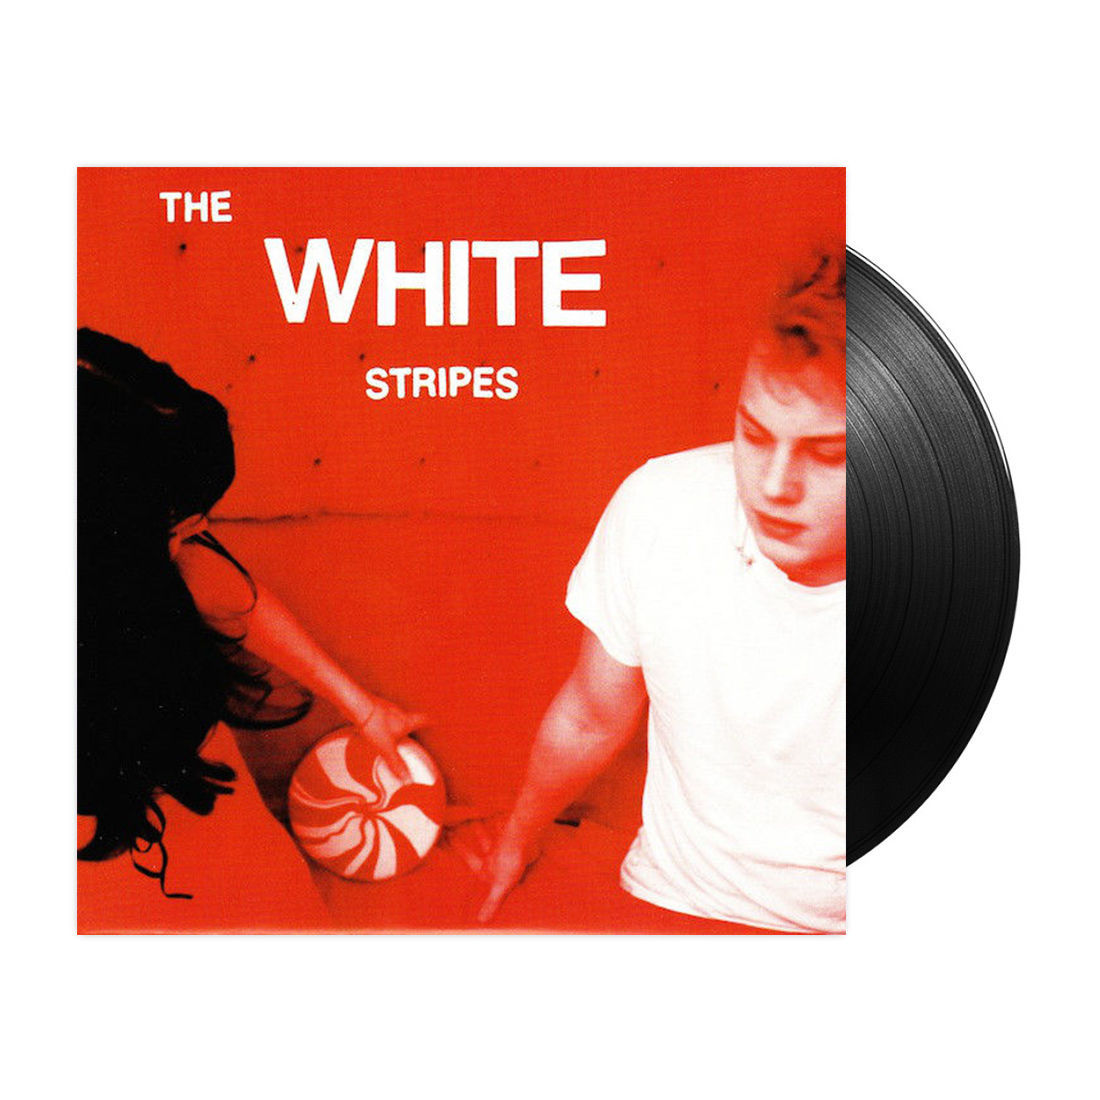 The White Stripes - Let's Shake Hands: Vinyl 7" Single